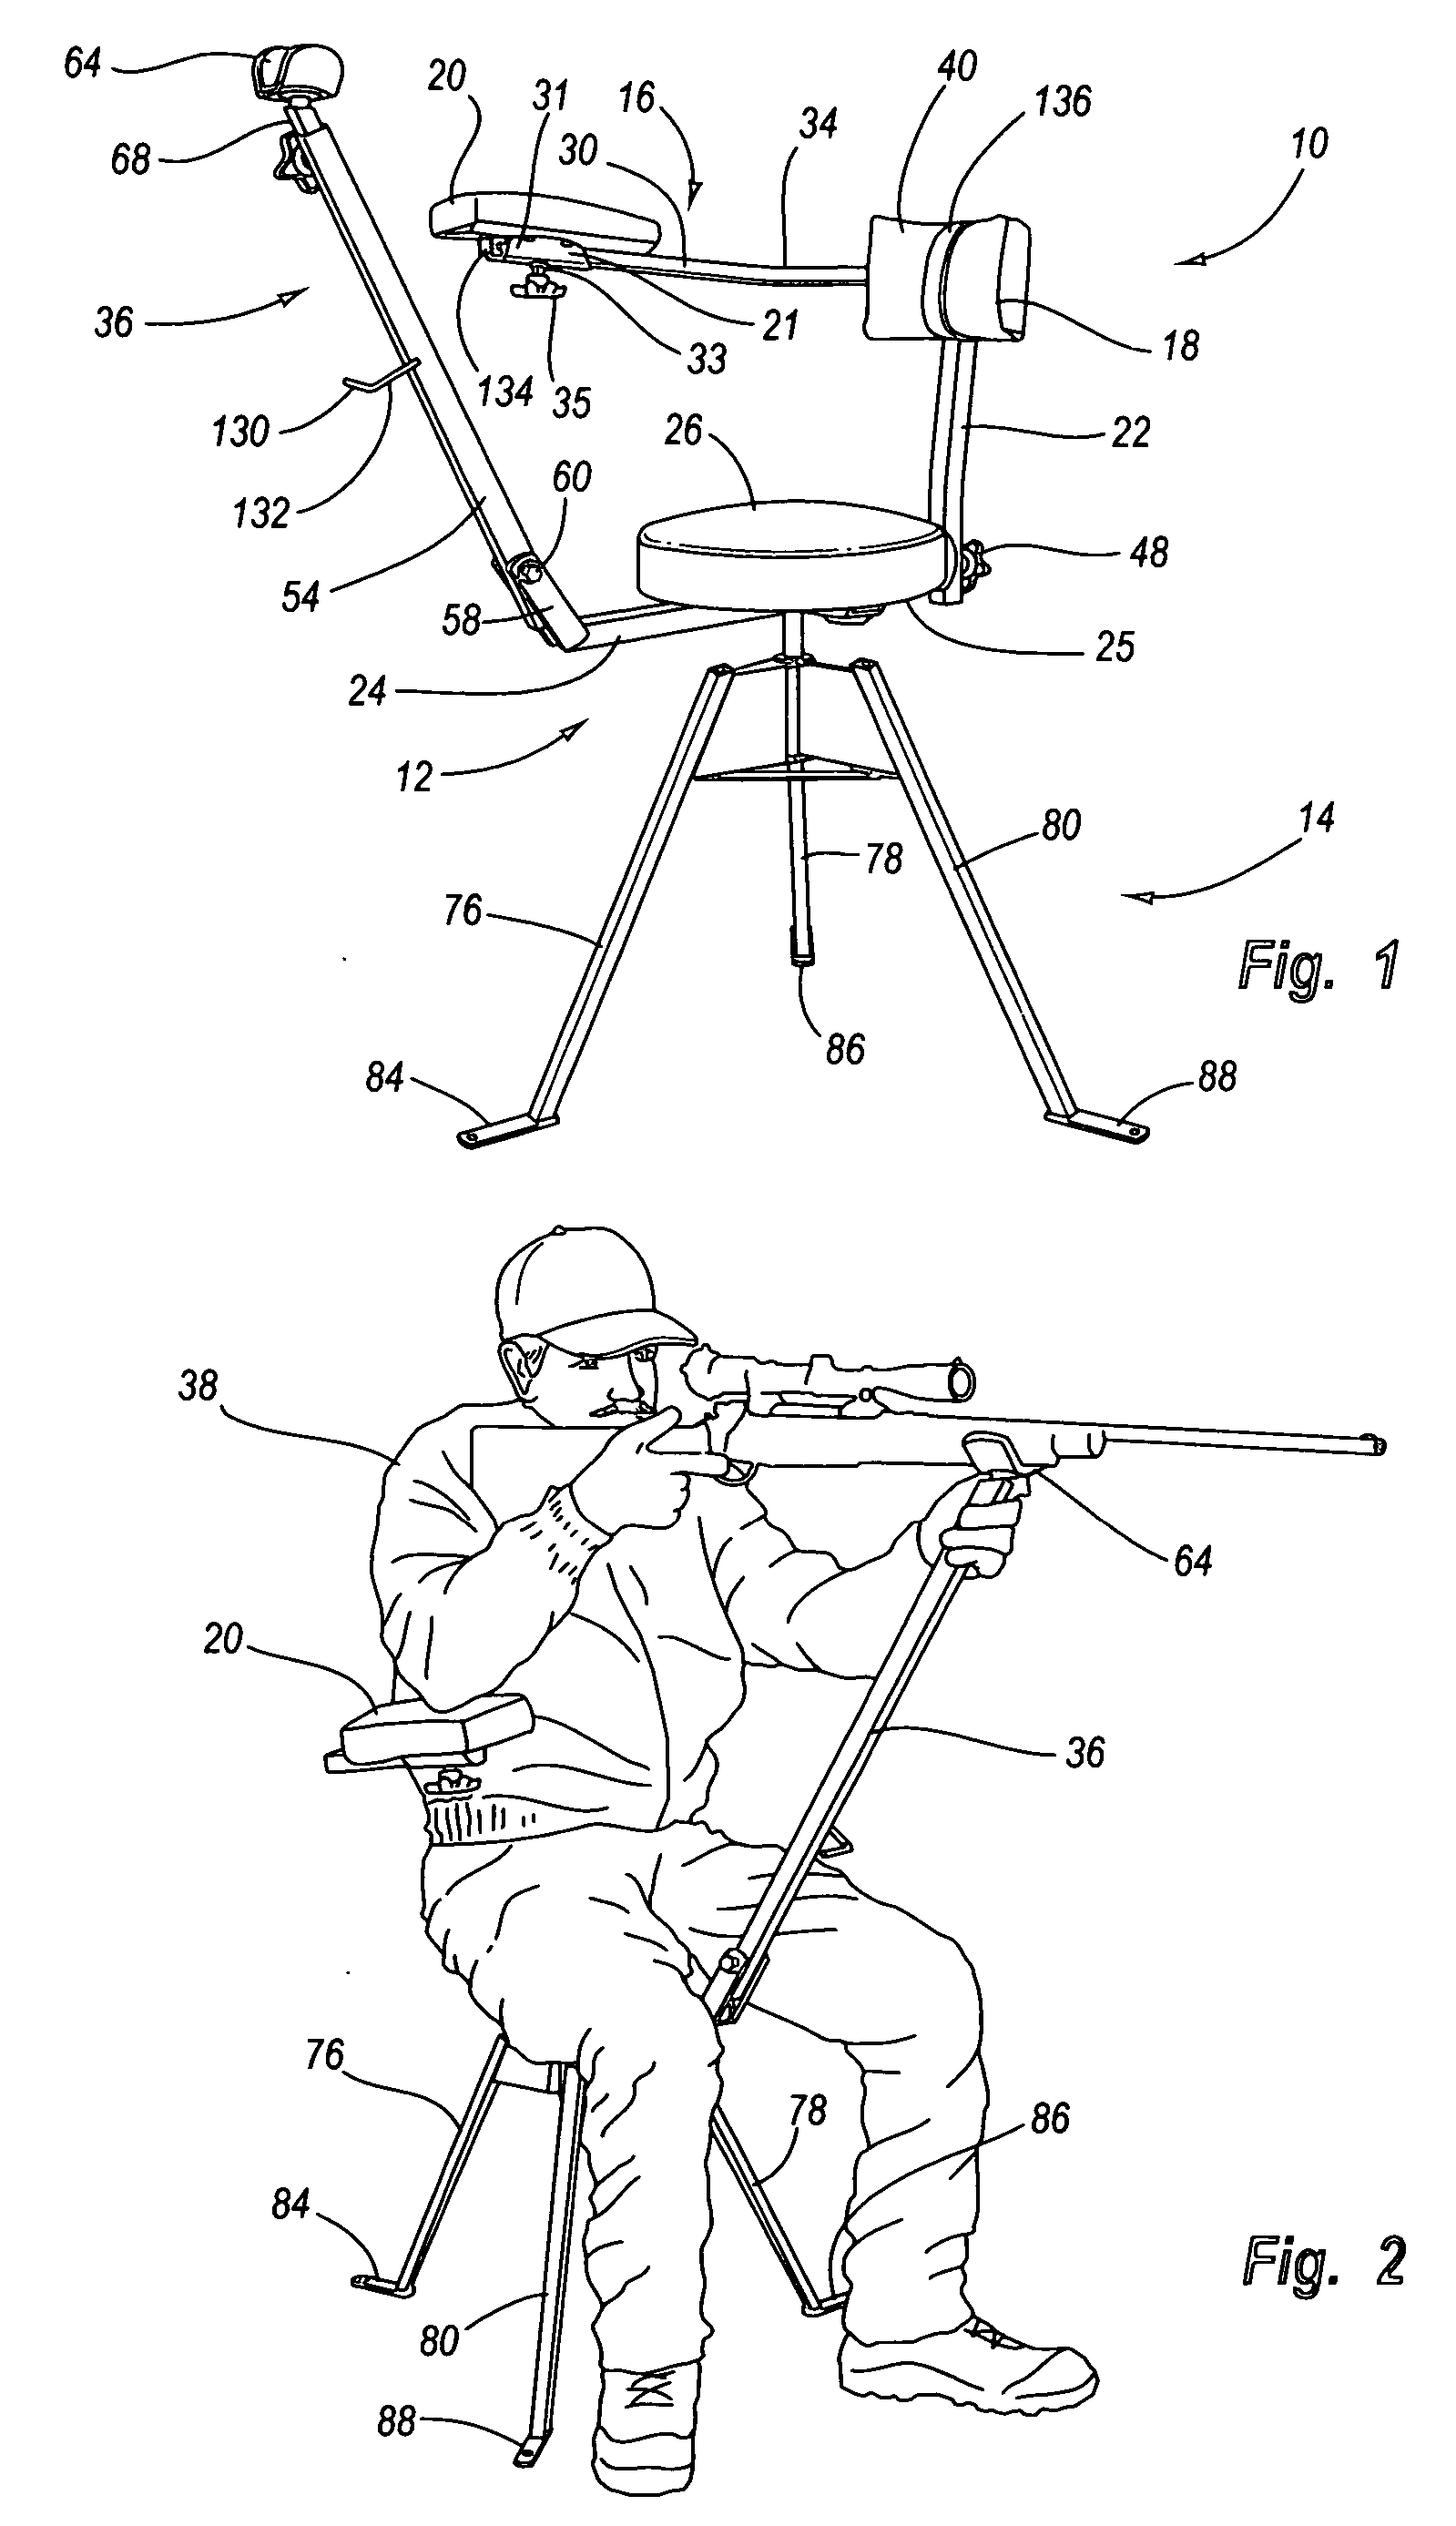 Foldable shooting chair